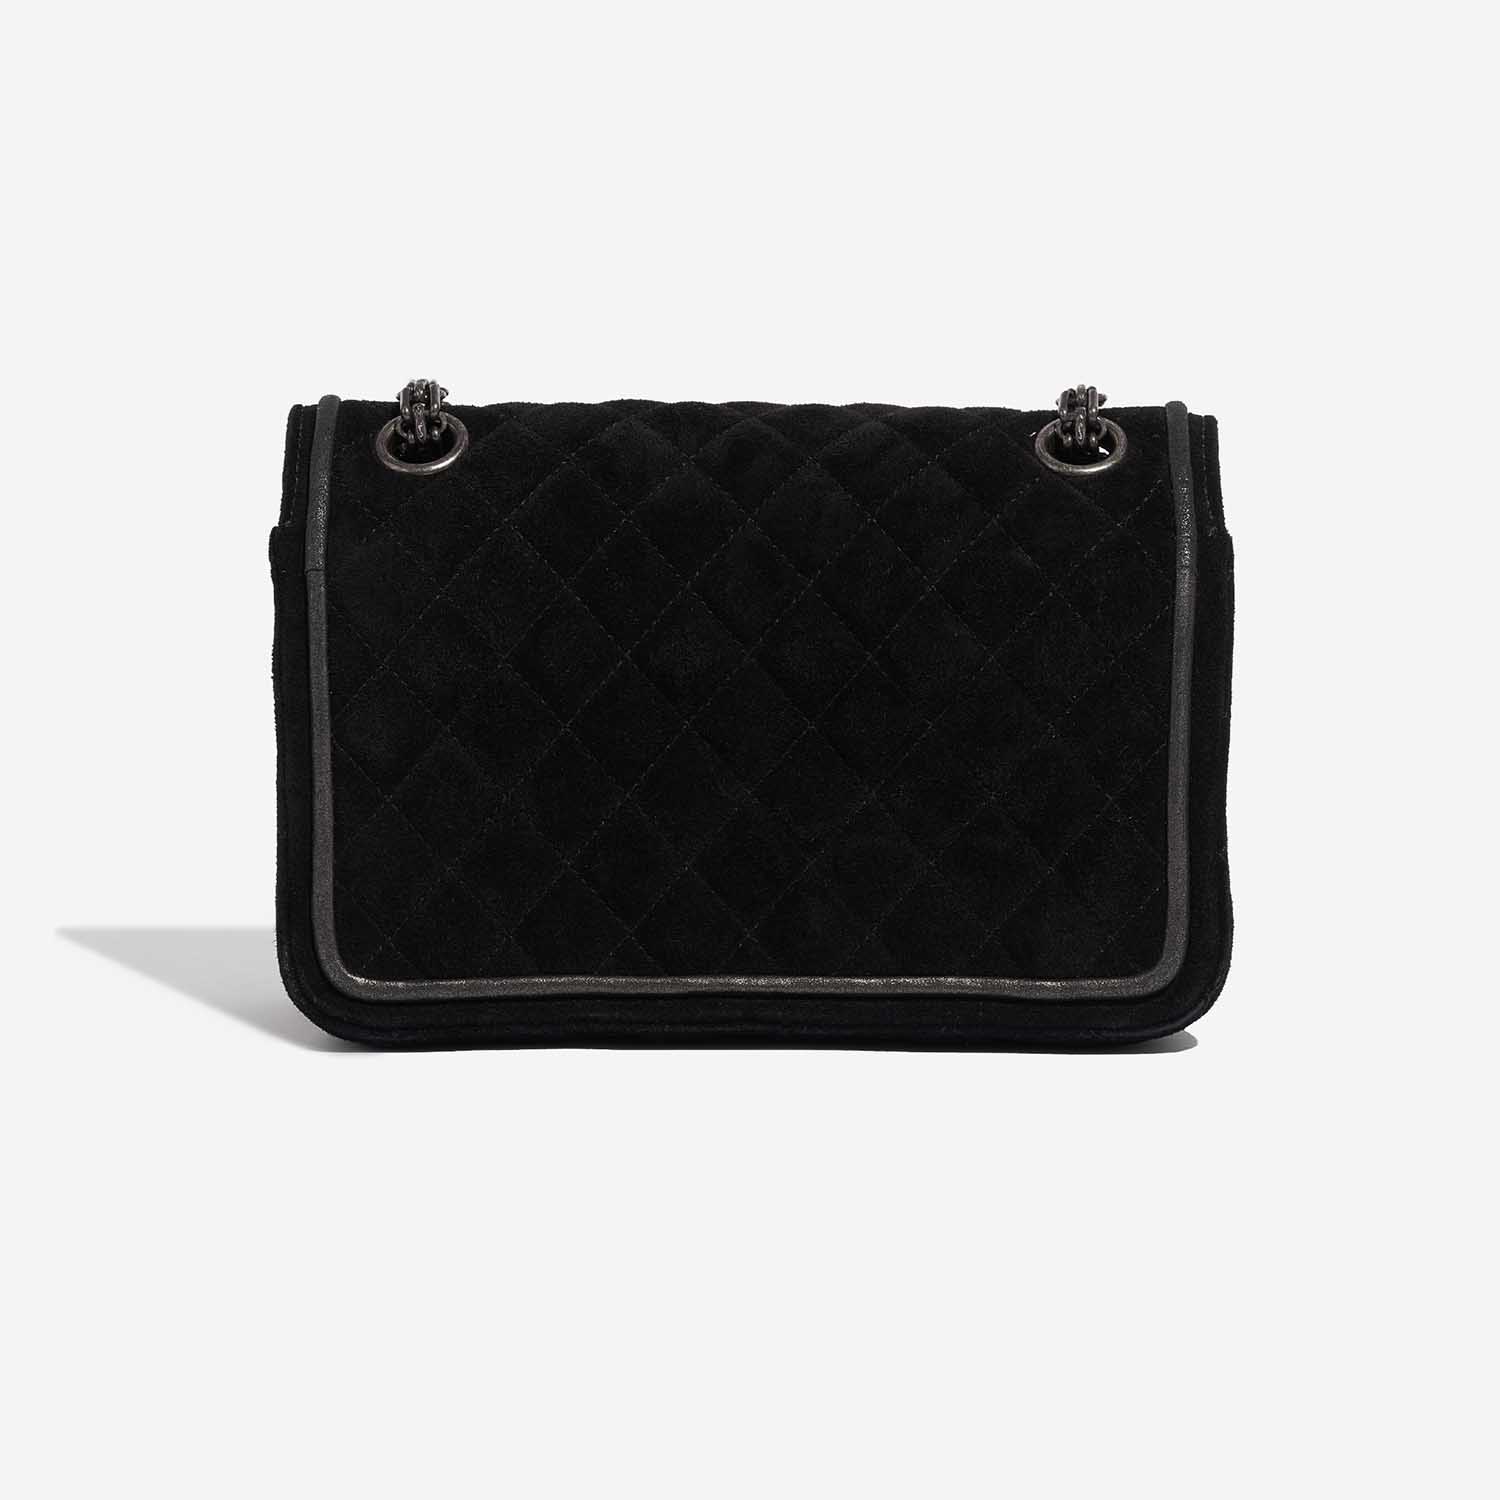 Sac Chanel 2.55 Reissue Velvet Noir Noir Dos | Vendez votre sac de créateur sur Saclab.com